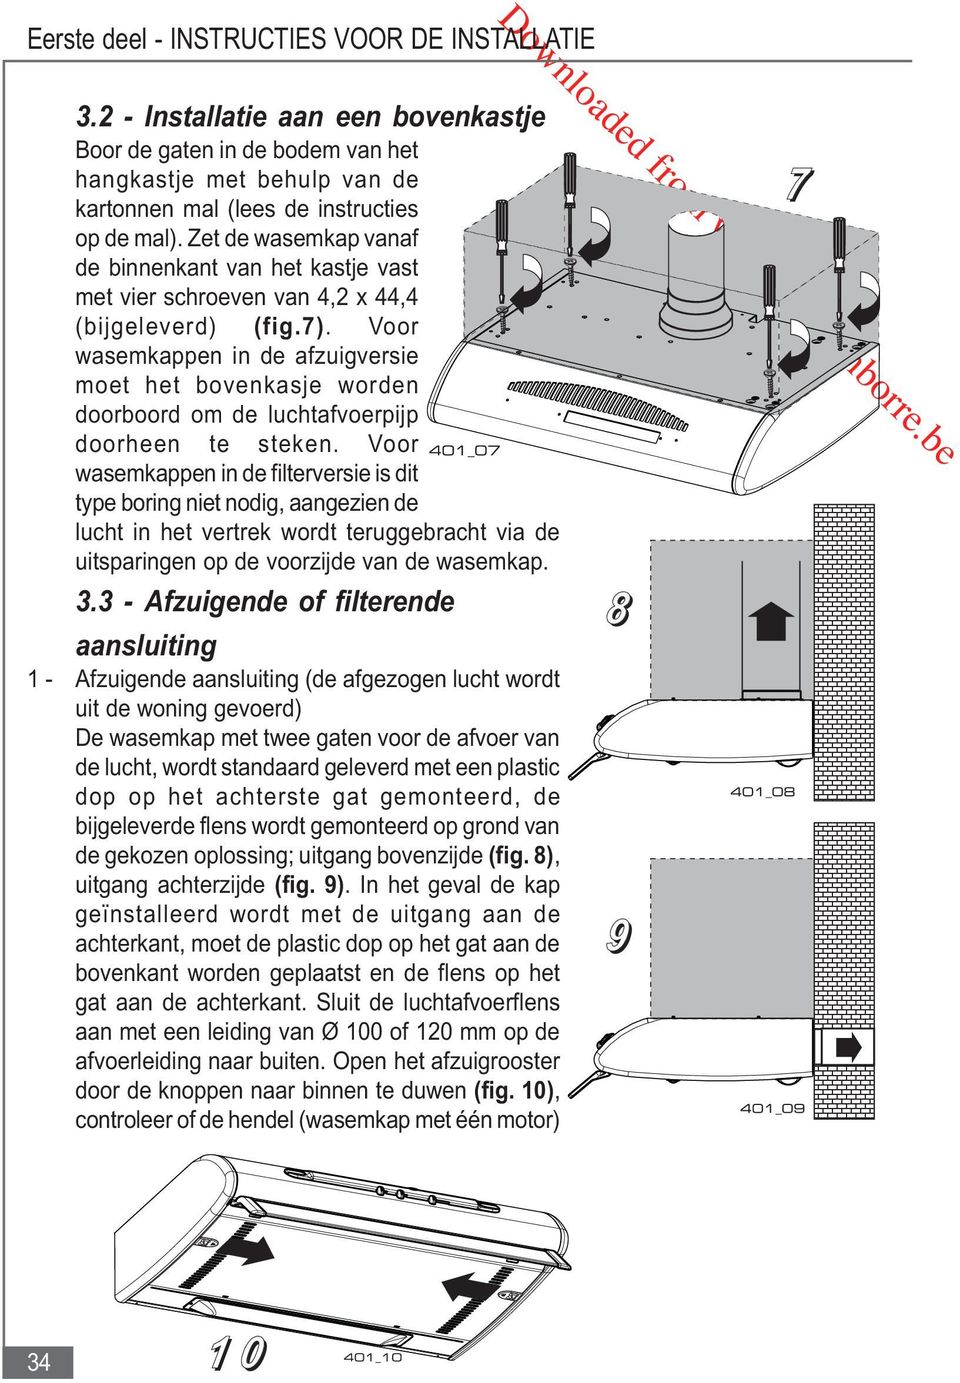 Voor wasemkappen in de afzuigversie moet het bovenkasje worden doorboord om de luchtafvoerpijp doorheen te steken.